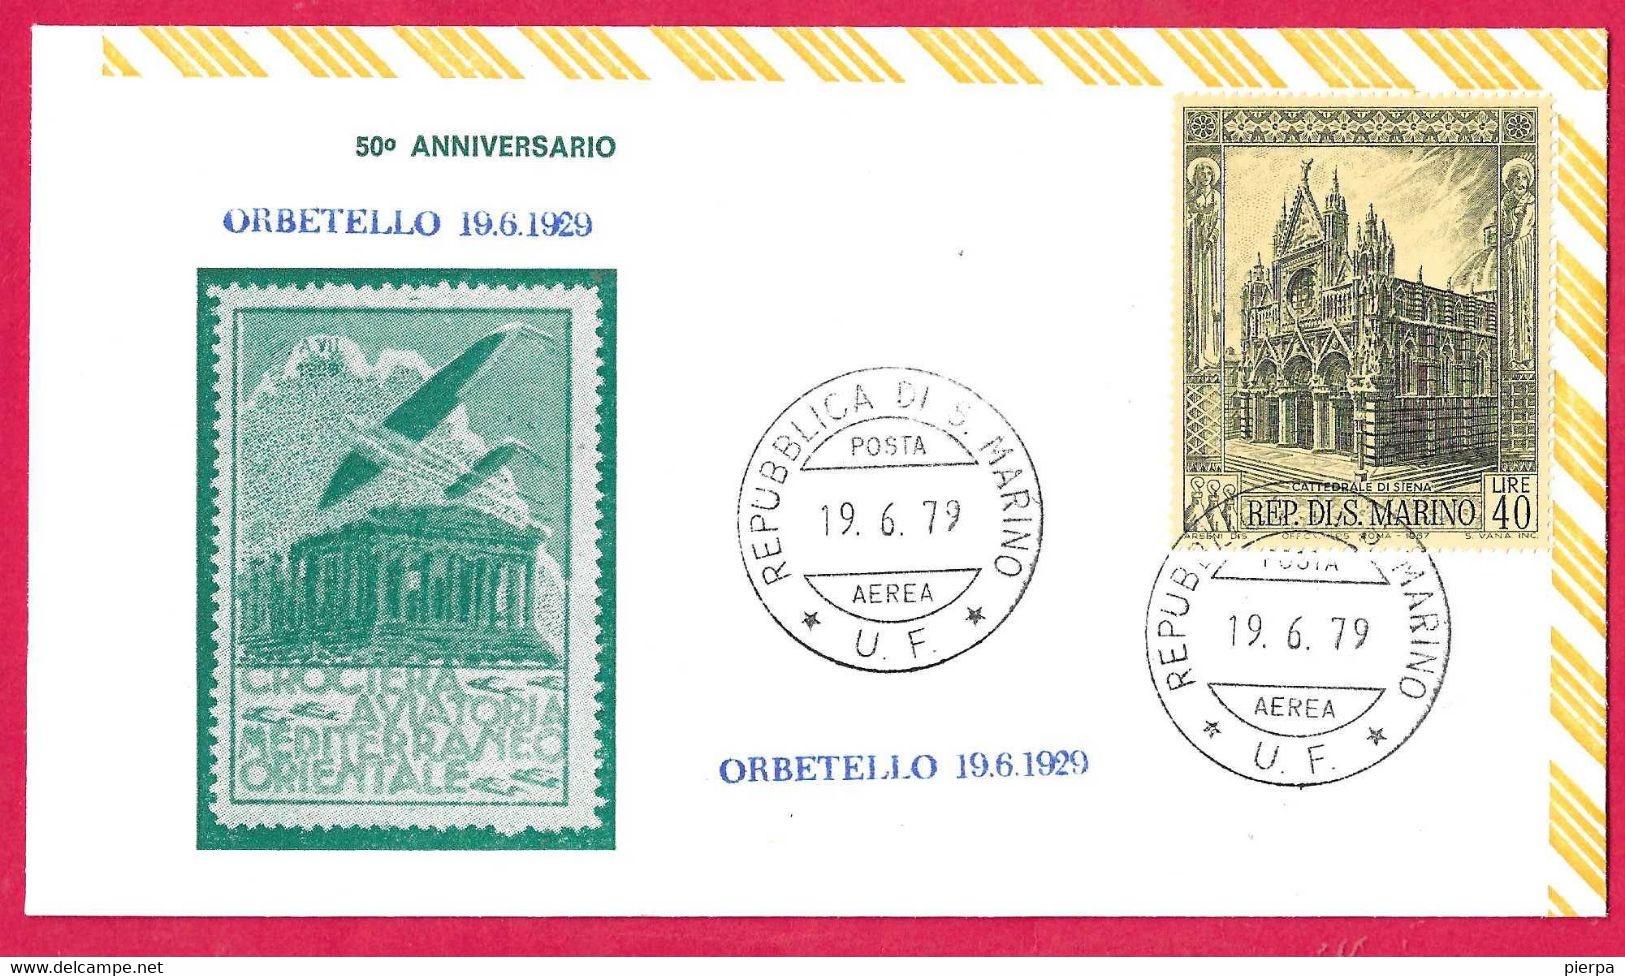 SAN MARINO - BUSTA COMMEMORATIVA 50° CROCIERA AVIATORIA MEDITERRANEO ORIENTALE * 19.GIU.1979* ORBETELLO - Lettres & Documents